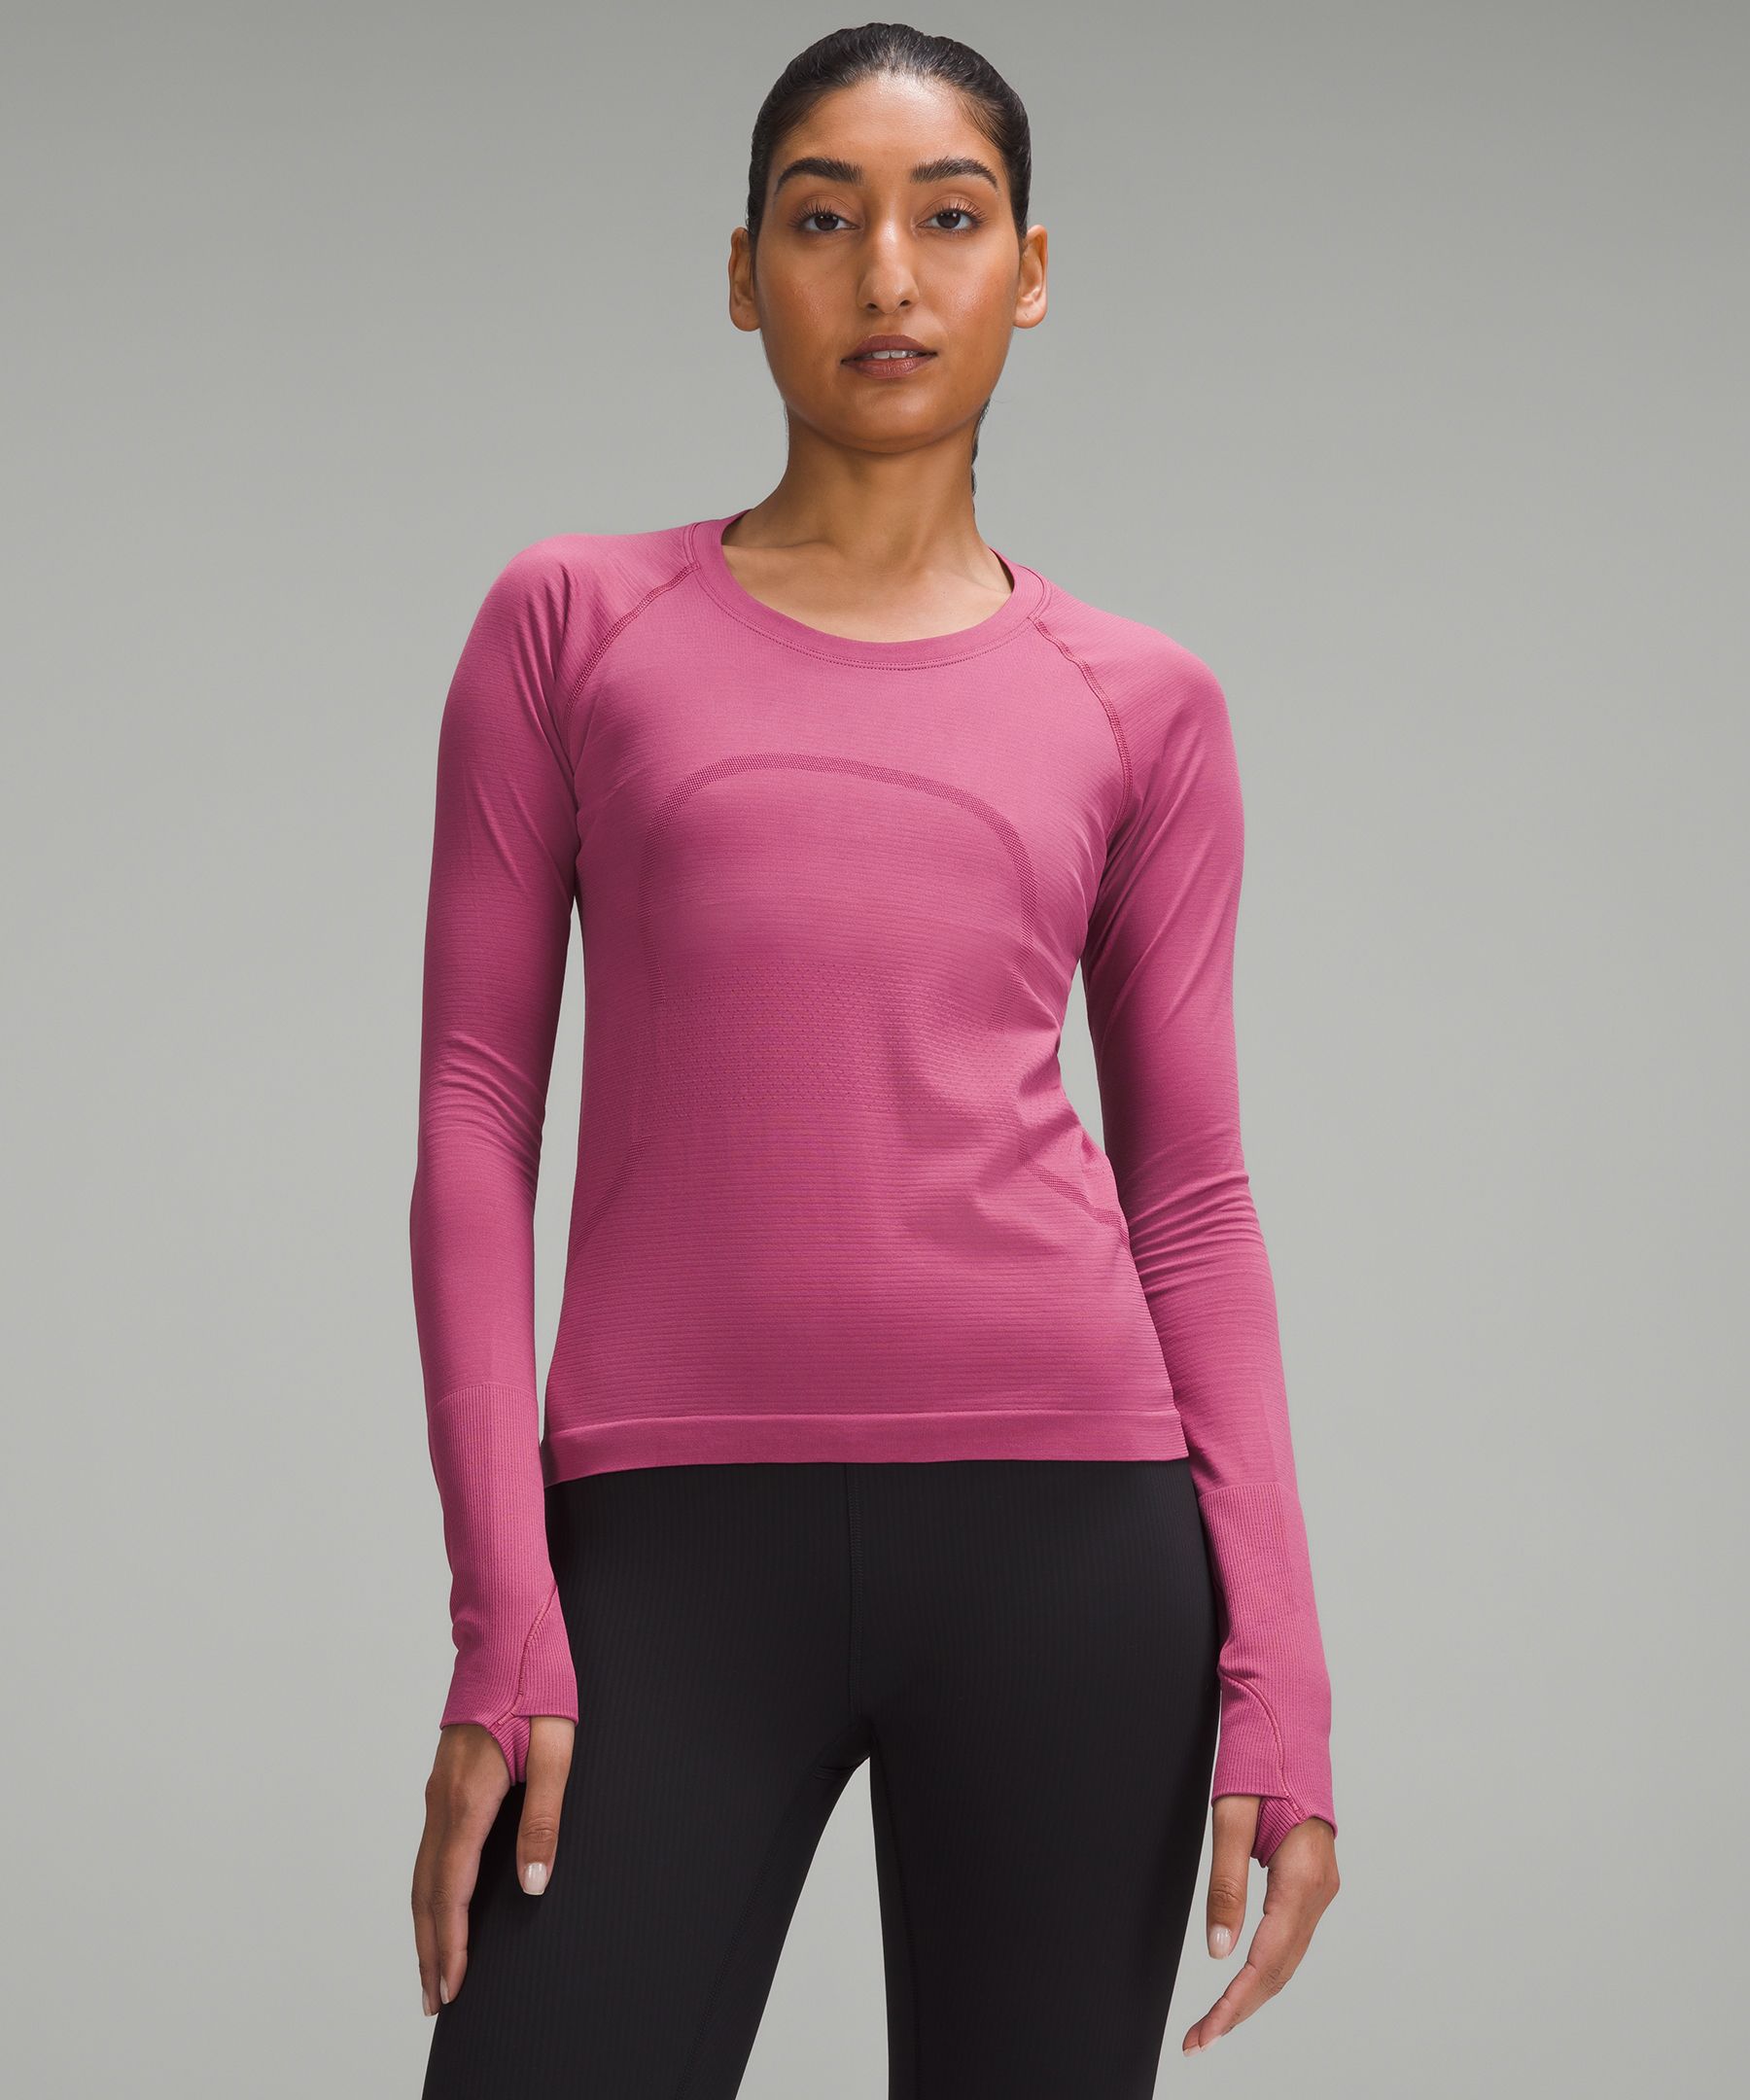 Swiftly Tech Long-Sleeve Shirt 2.0 *Race Length | Women's Long 